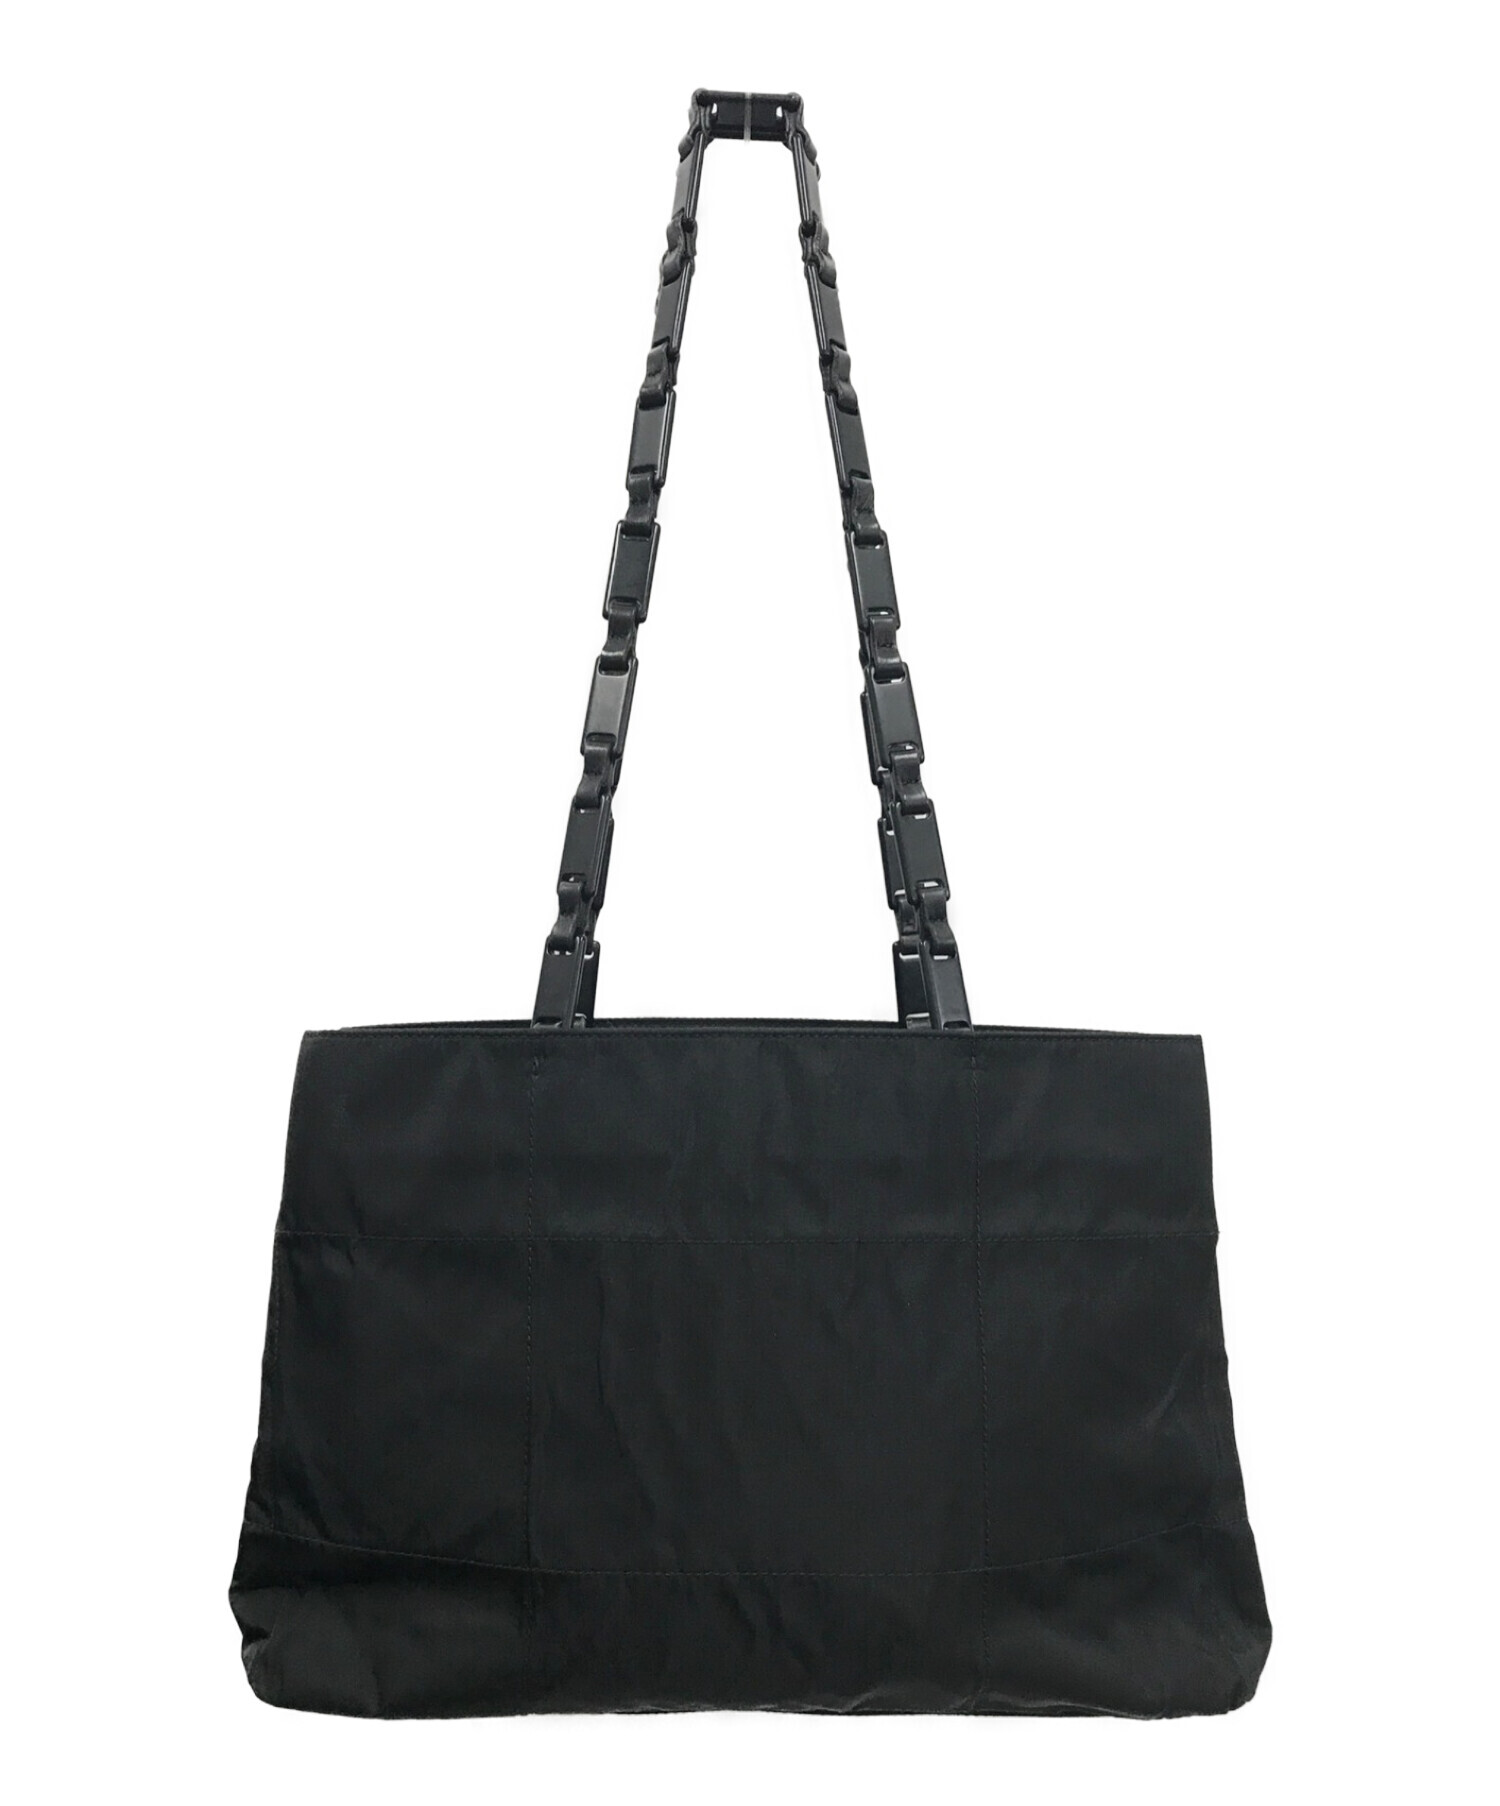 【割引品】美品プラダ レザー プラスチックチェーン トートバッグ 肩掛け 刻印ロゴ バッグ